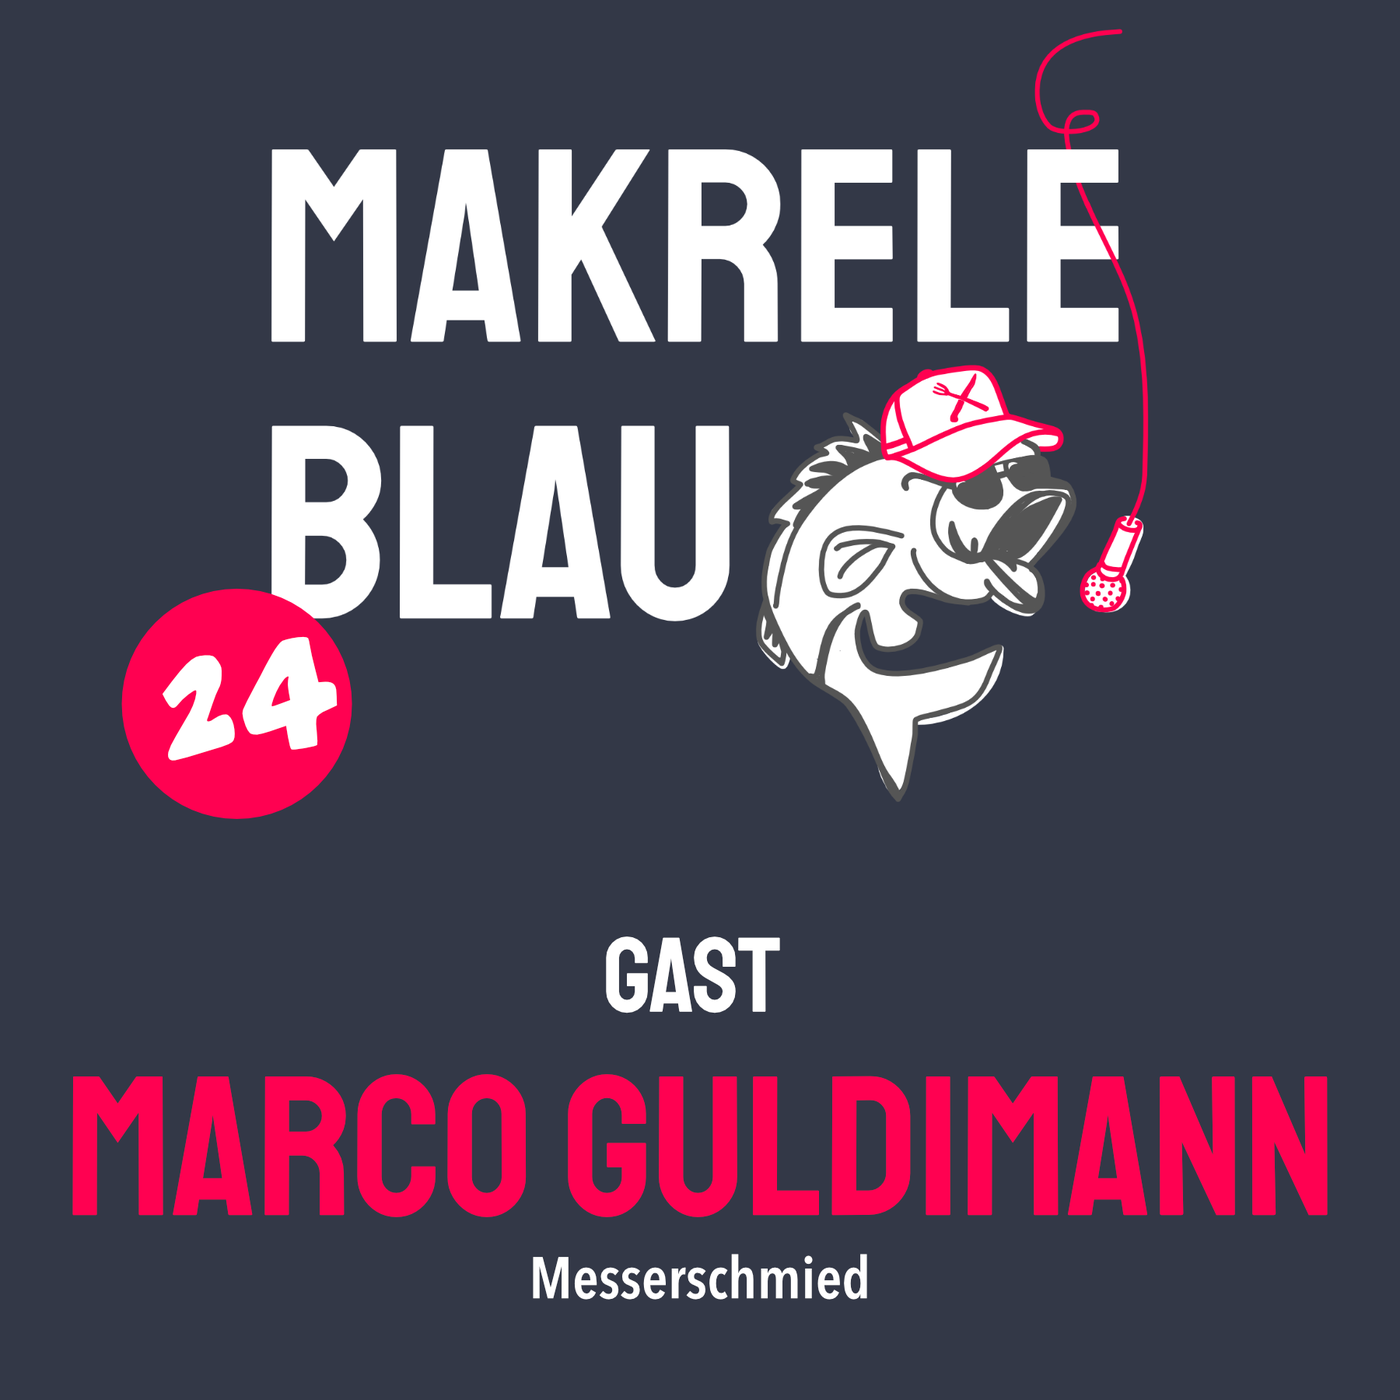 Makrele Blau #24 – Klingä isch gwetzt, mit em Marco Guldimann